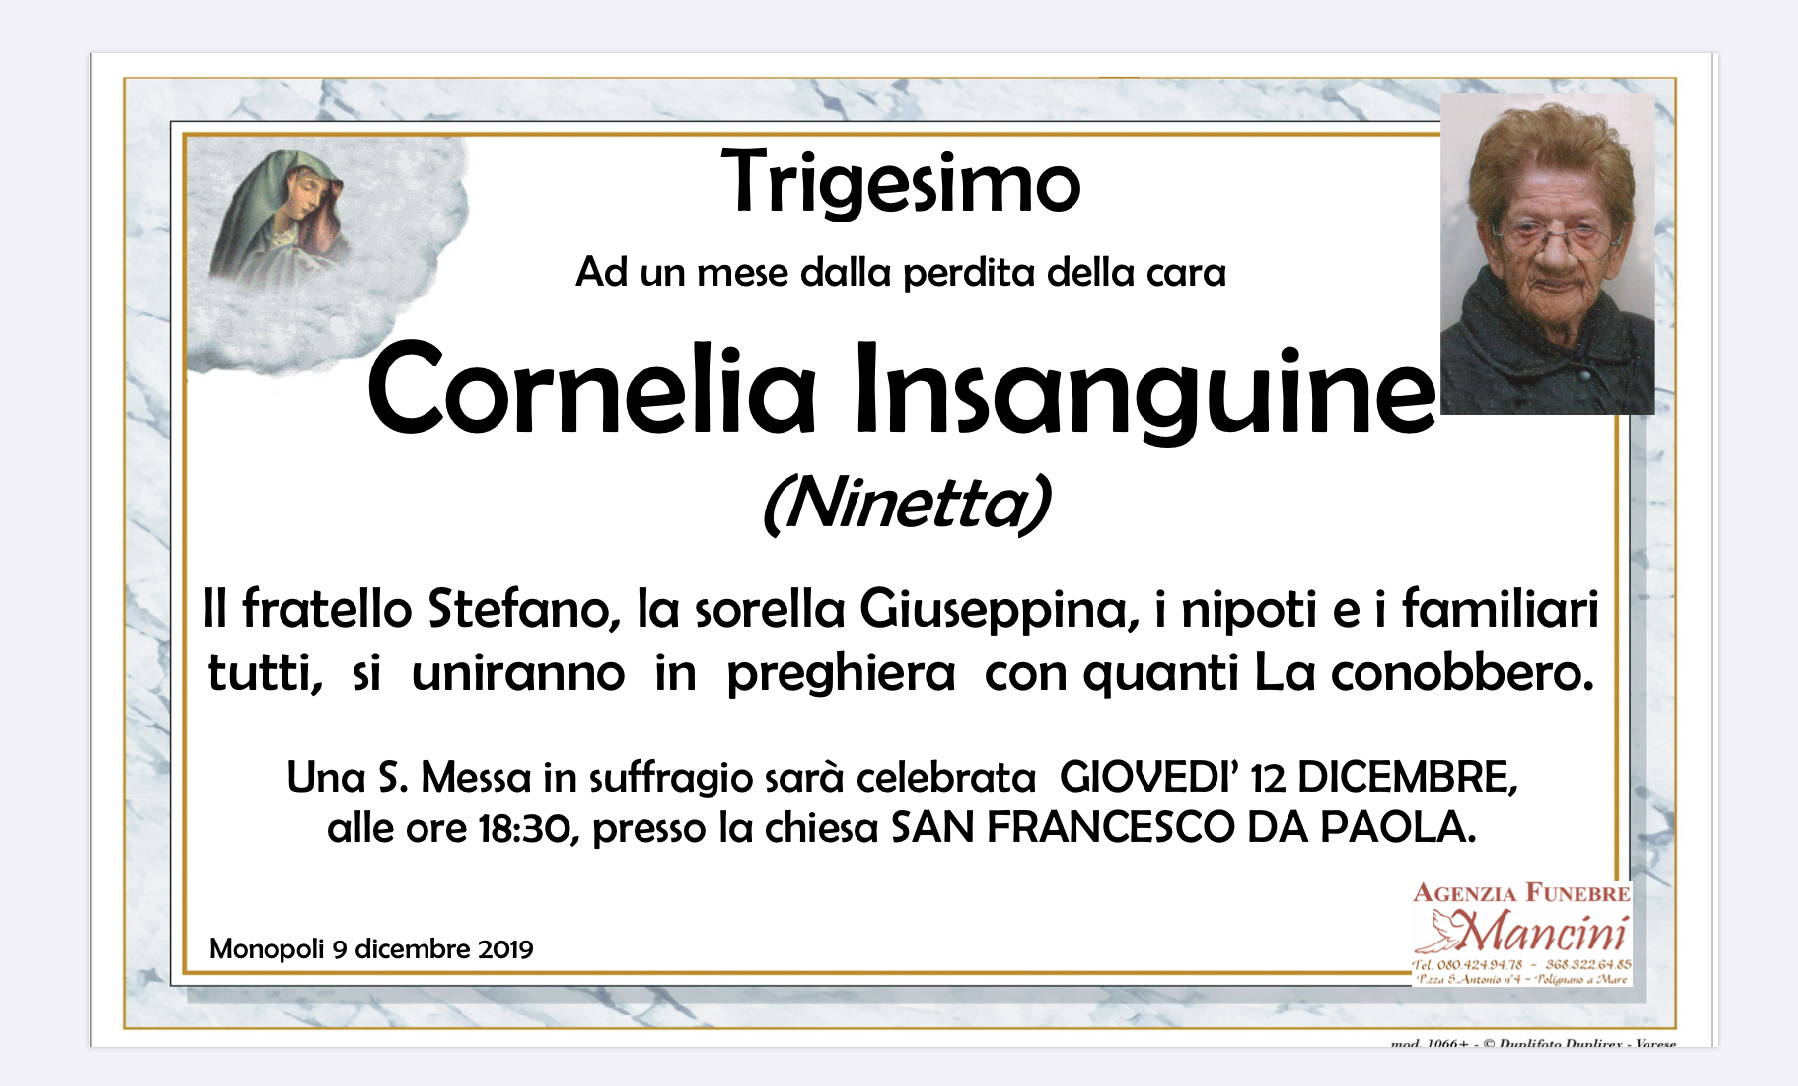 Cornelia Insanguine